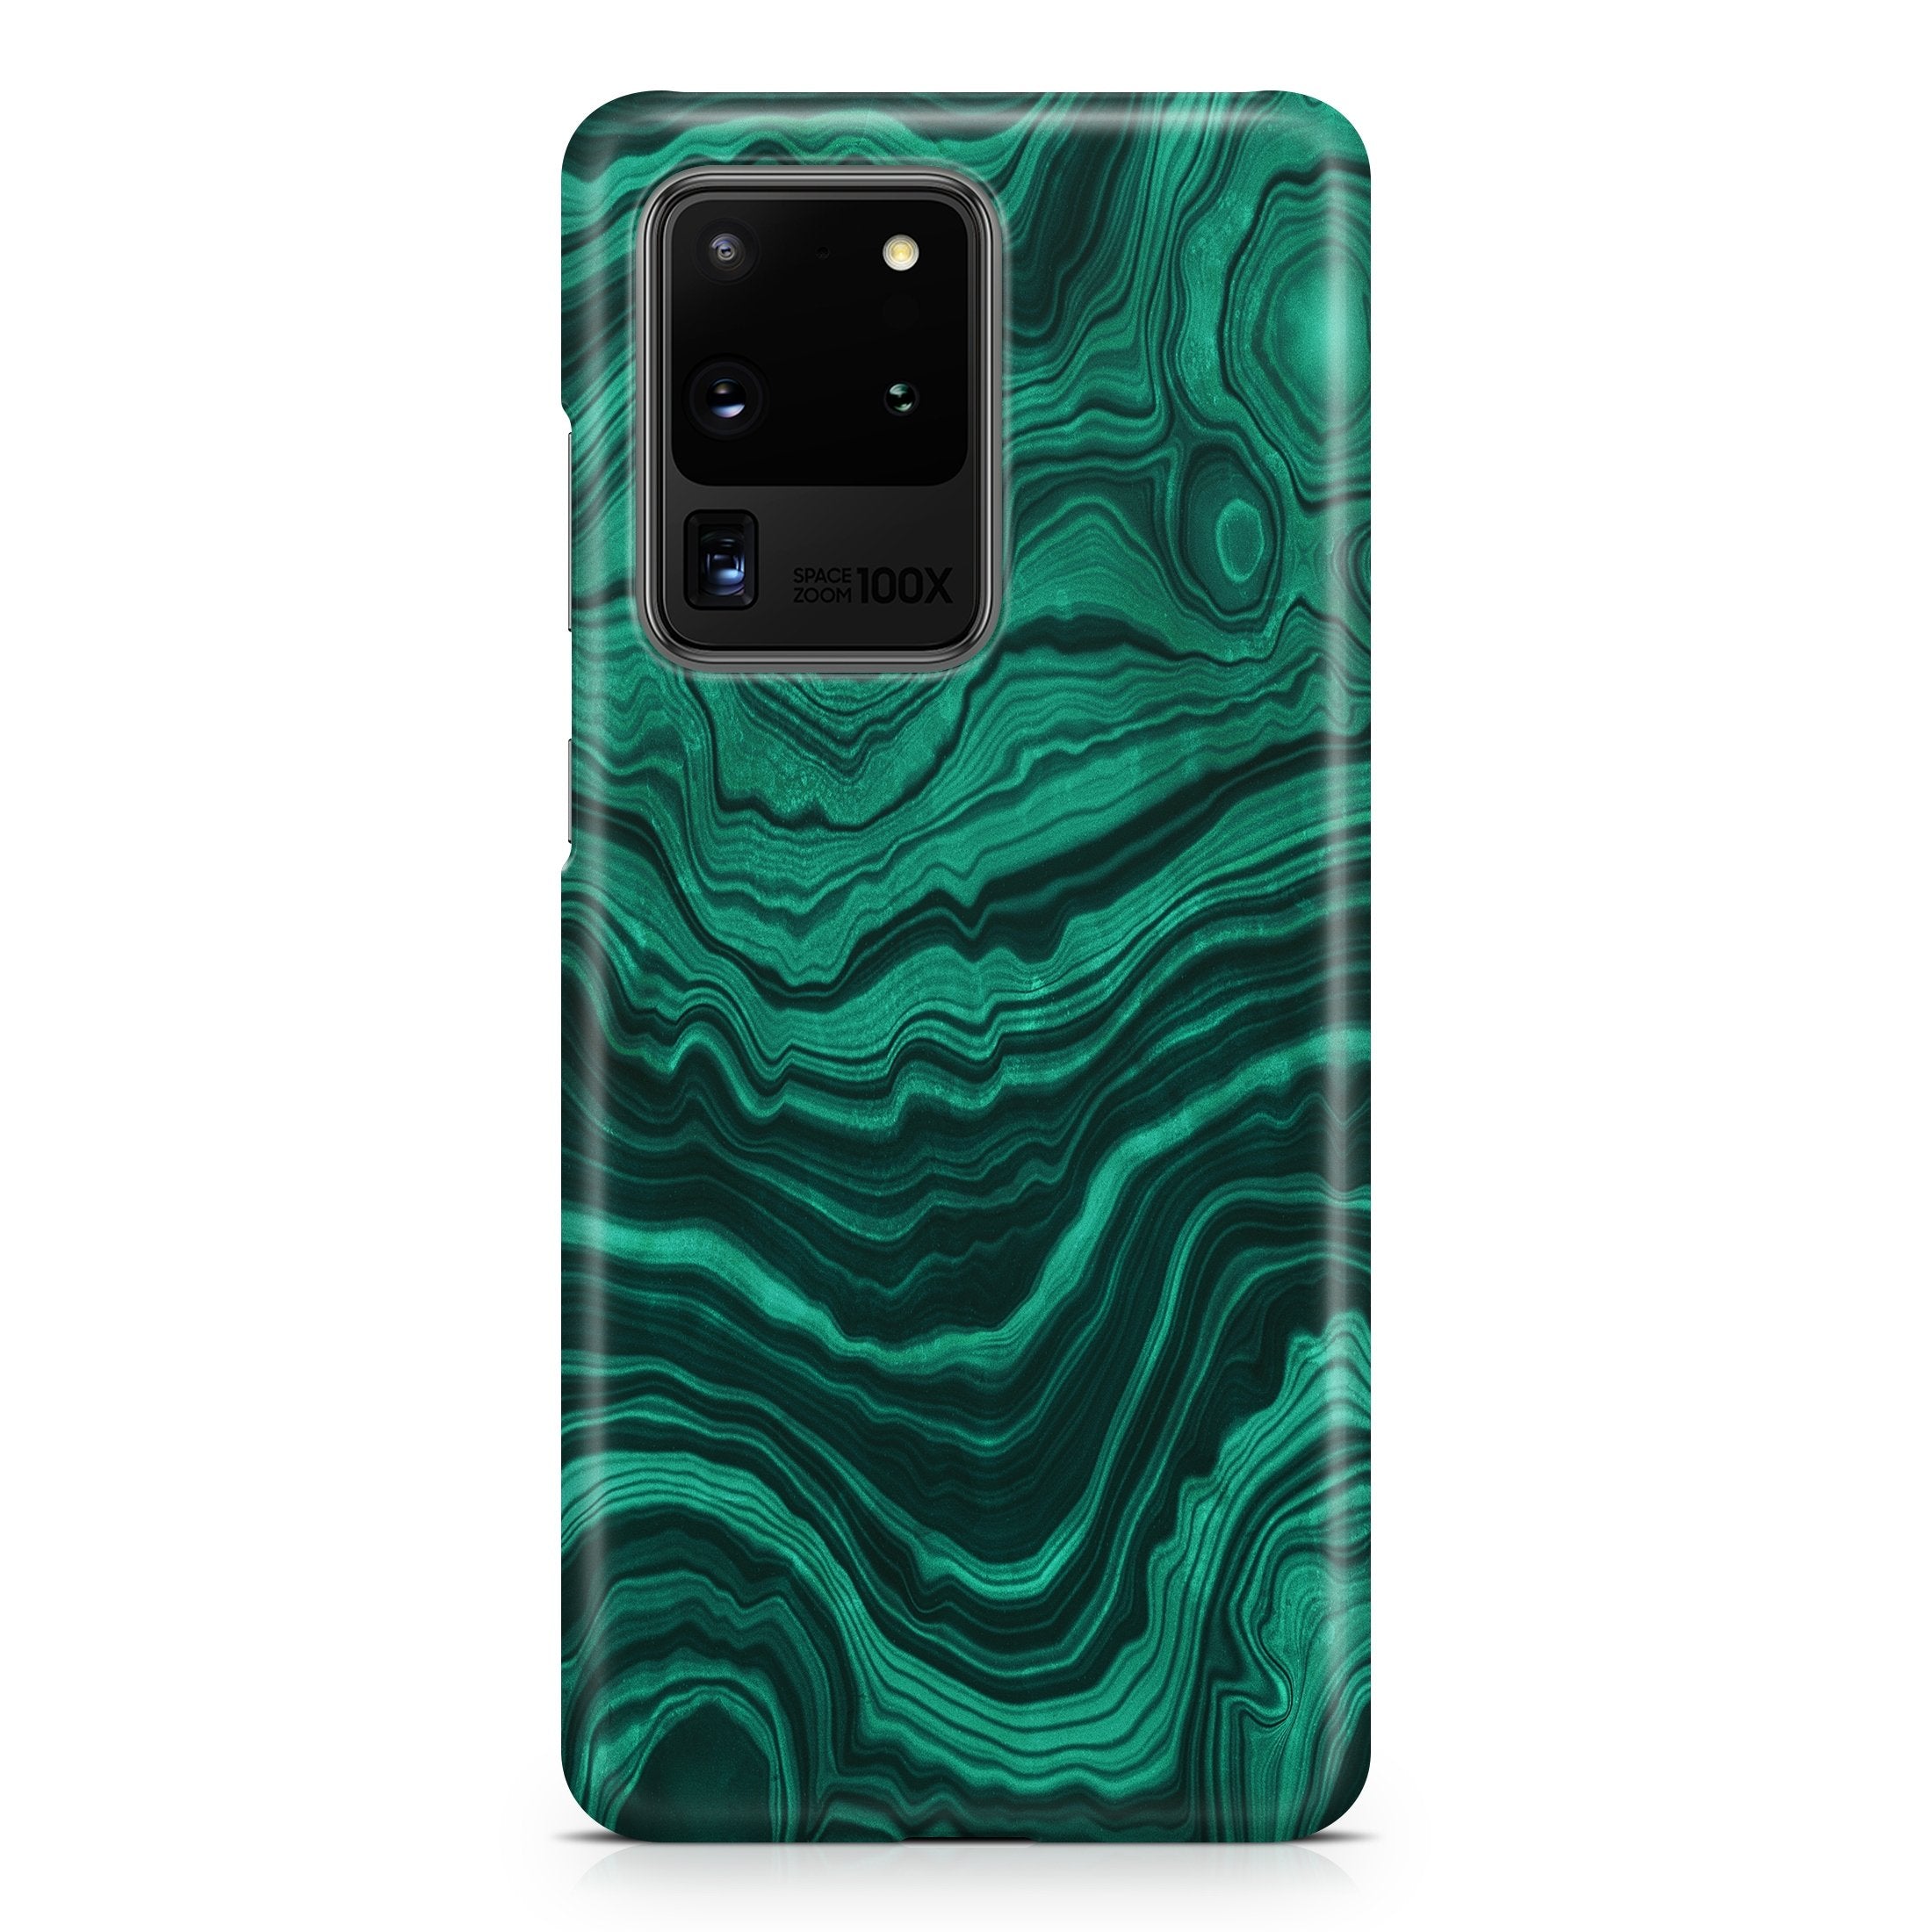 Malachite VI - Samsung phone case designs by CaseSwagger